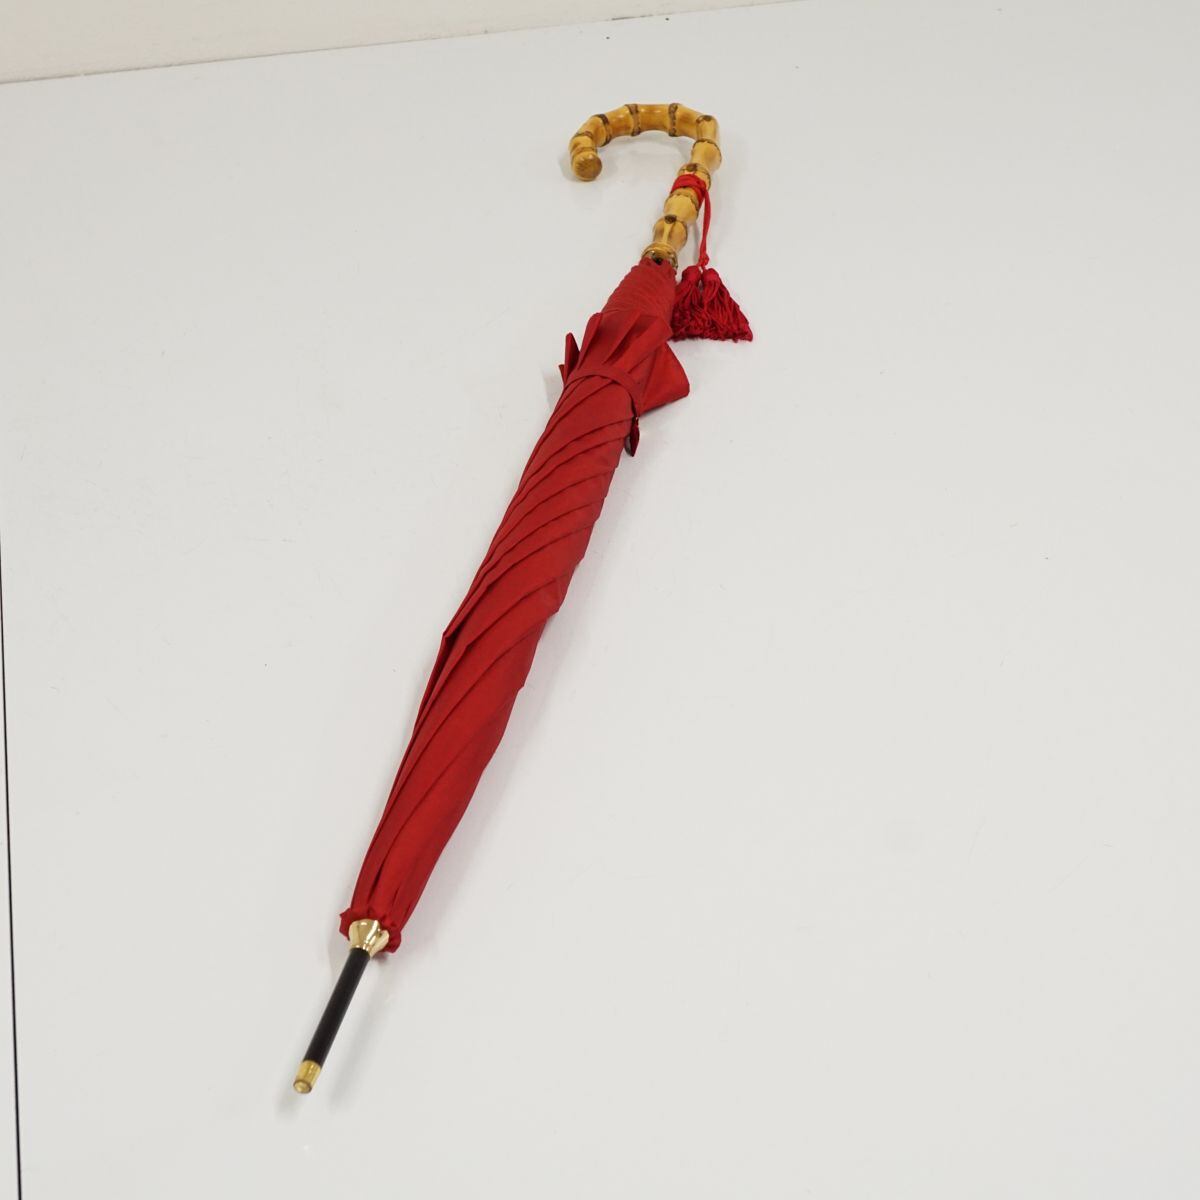 WAKAO ワカオ 傘 USED美品 バンブークラシック シンプル レッド 赤 無地 富士絹 高級 55cm KR A0159